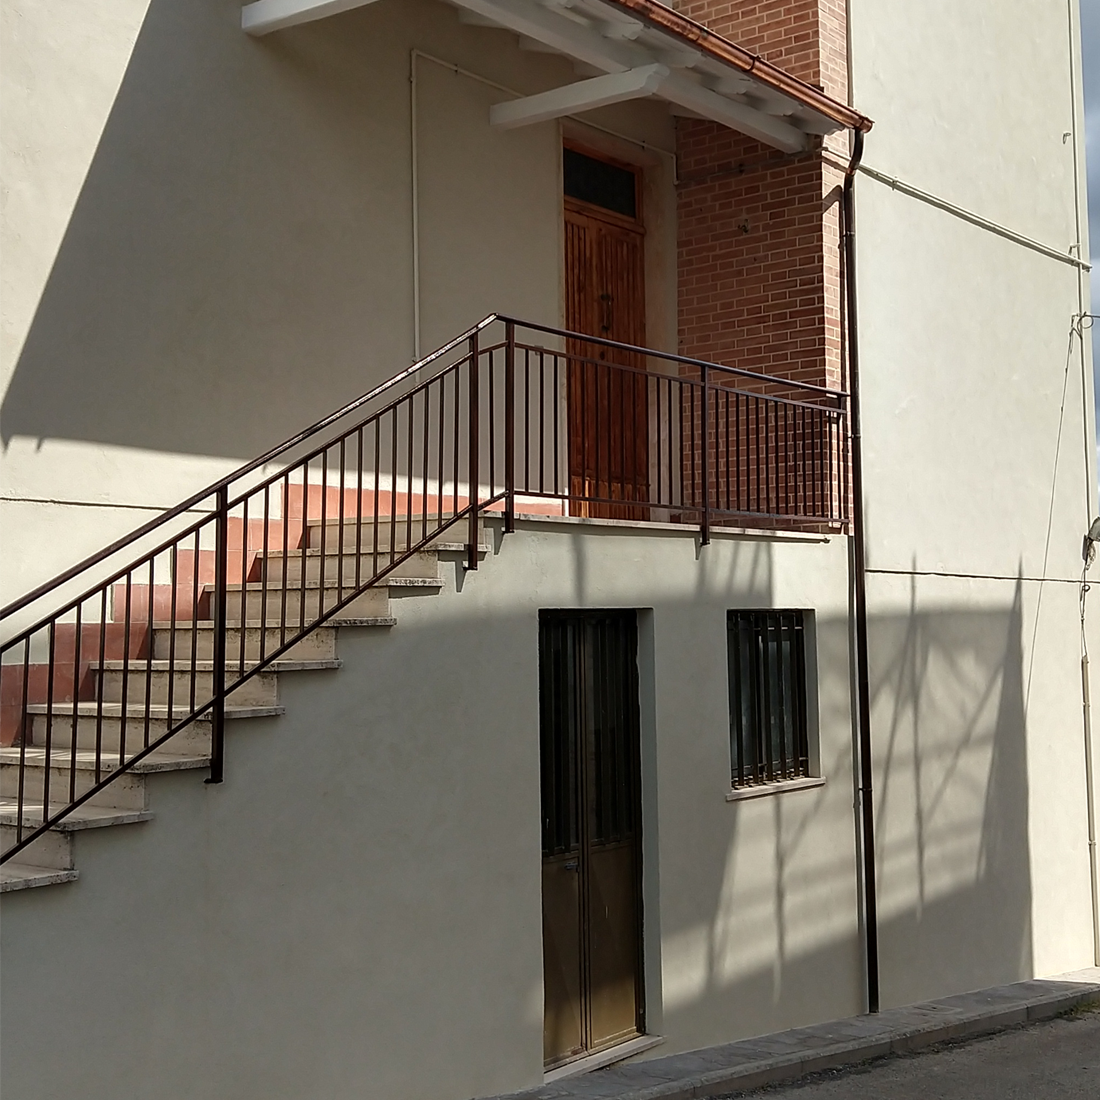 Применение БРОНЯ Фасад НГ на целой улице коттеджей в г. Поджибонси, Италия по гос. программе 110% (фото, видео)